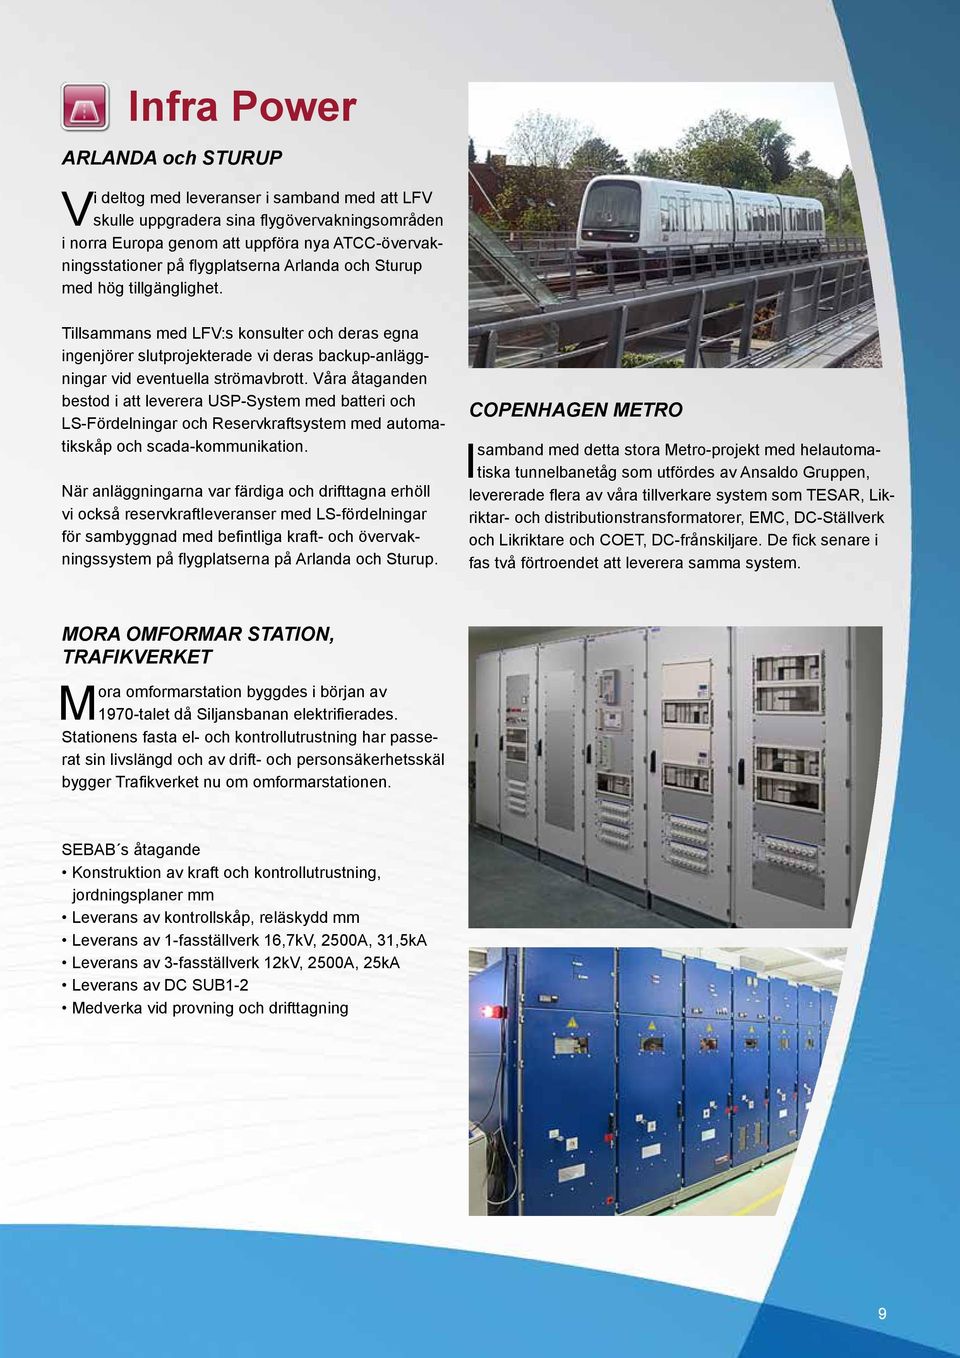 Våra åtaganden bestod i att leverera USP-System med batteri och LS-Fördelningar och Reservkraftsystem med automatikskåp och scada-kommunikation.